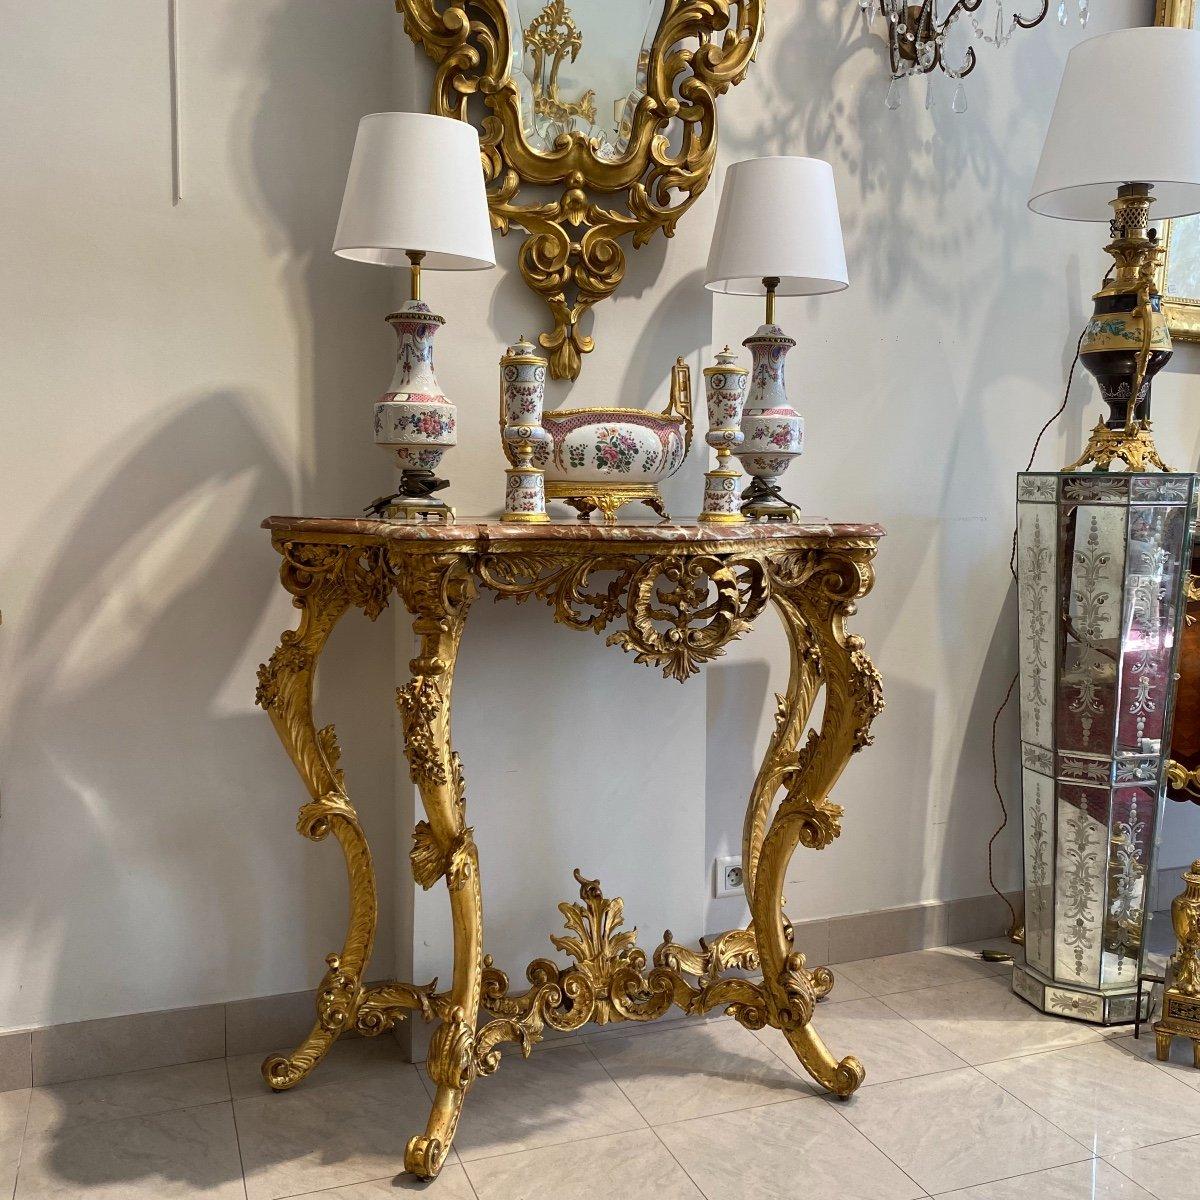 Nous vous présentons cette magnifique console de style Louis XV de transition d'époque Napoléon III. Il est en bois doré et soutenu par quatre pieds cabriole reliés par un brancard. Son apparence élégante est accentuée par sa projection de marbre